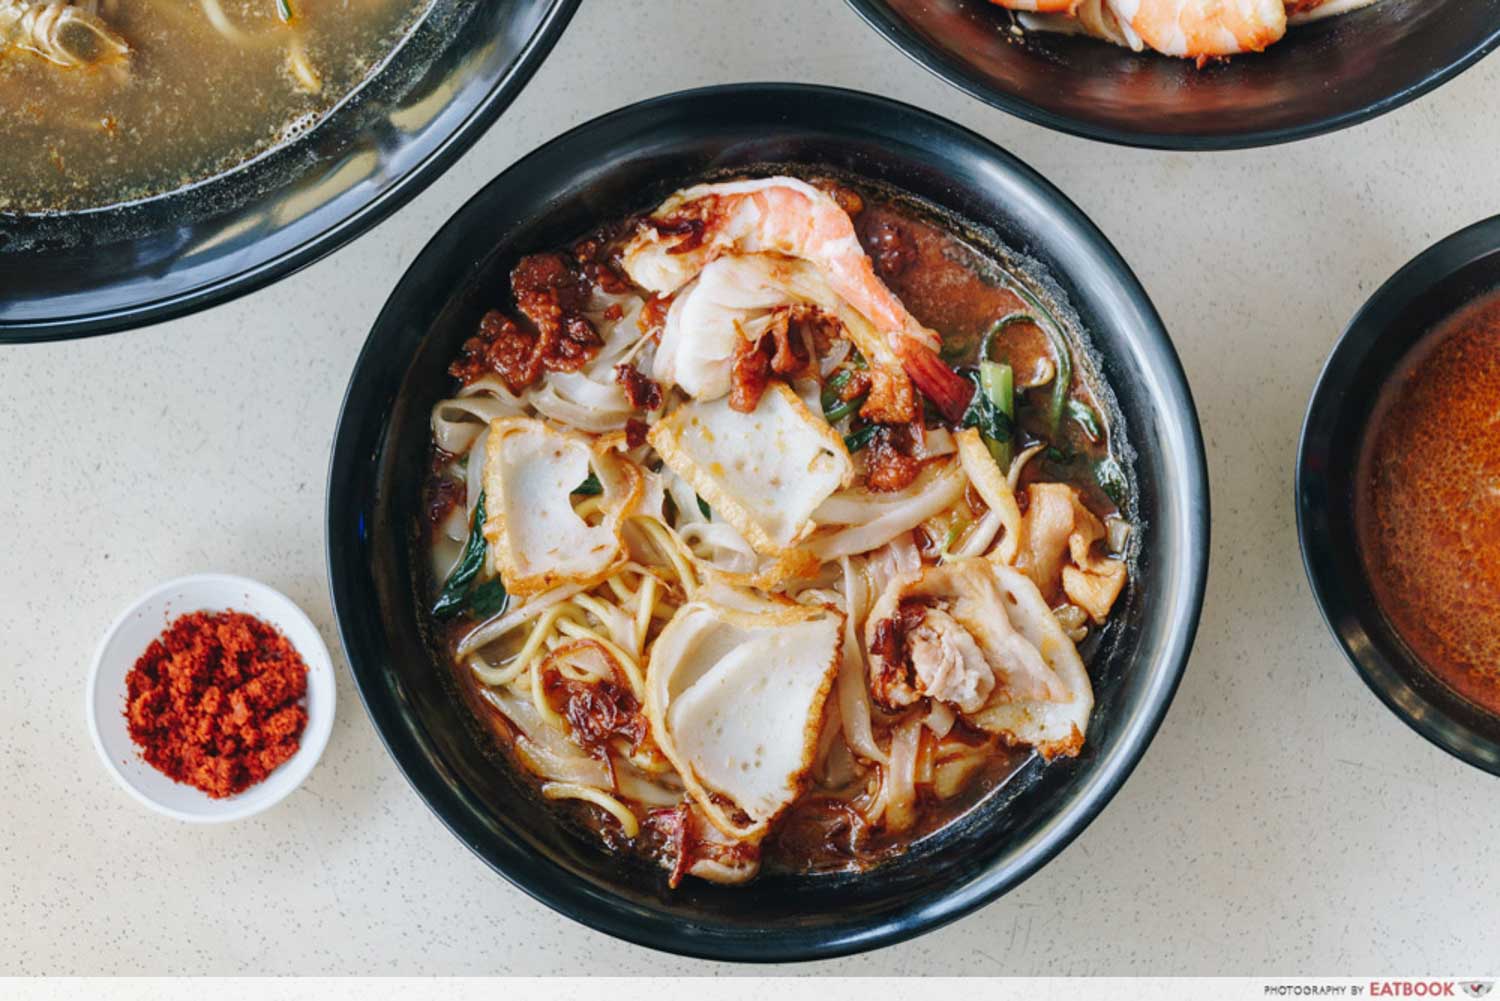 Zhen Jie Seafood - Prawn noodles